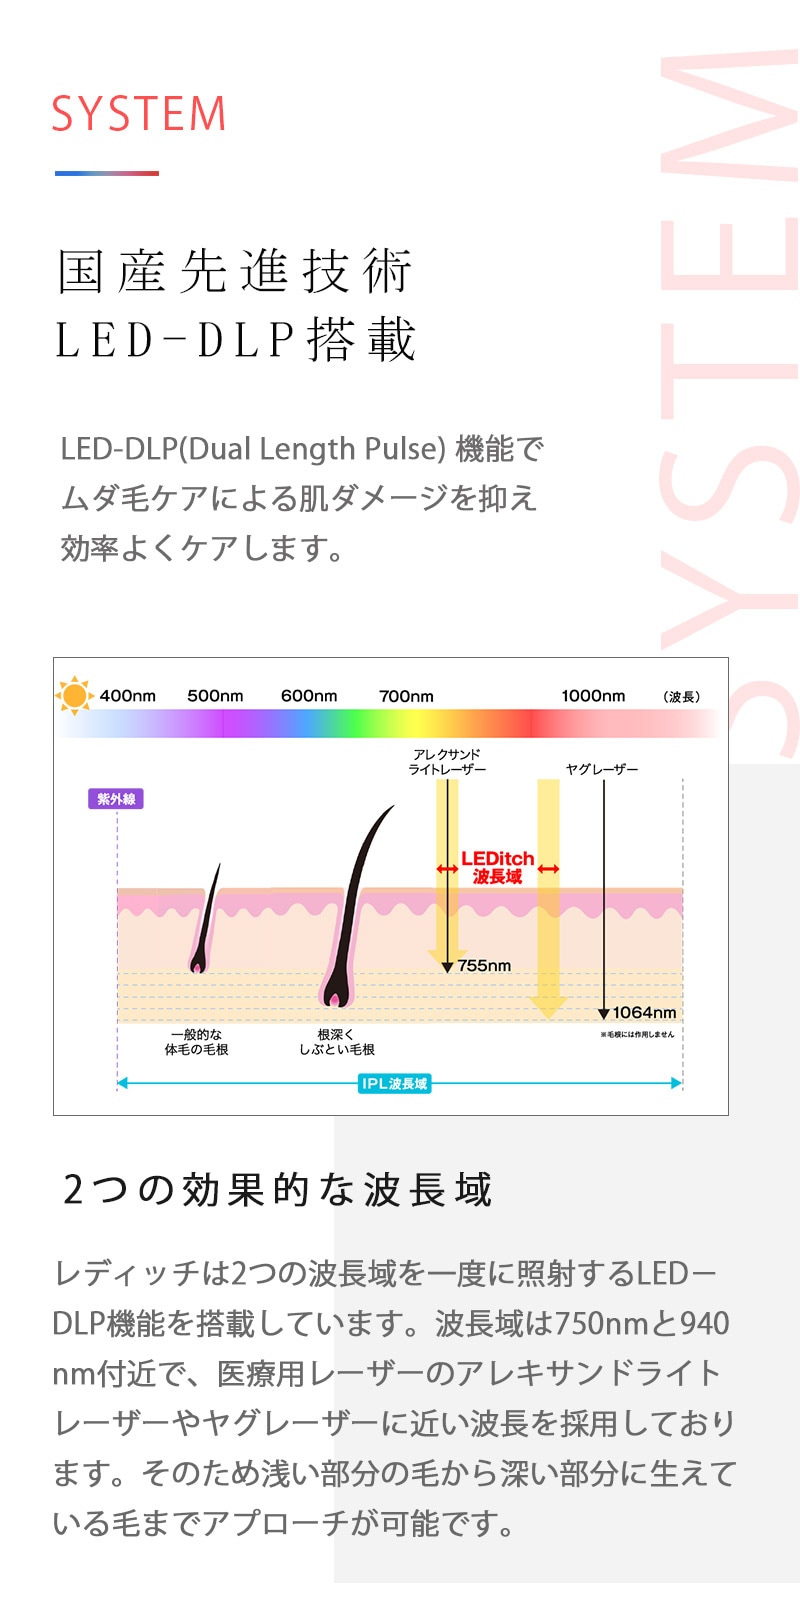 2つの効果的な波長域を同時照射する 国産先進技術 LED-DLP搭載